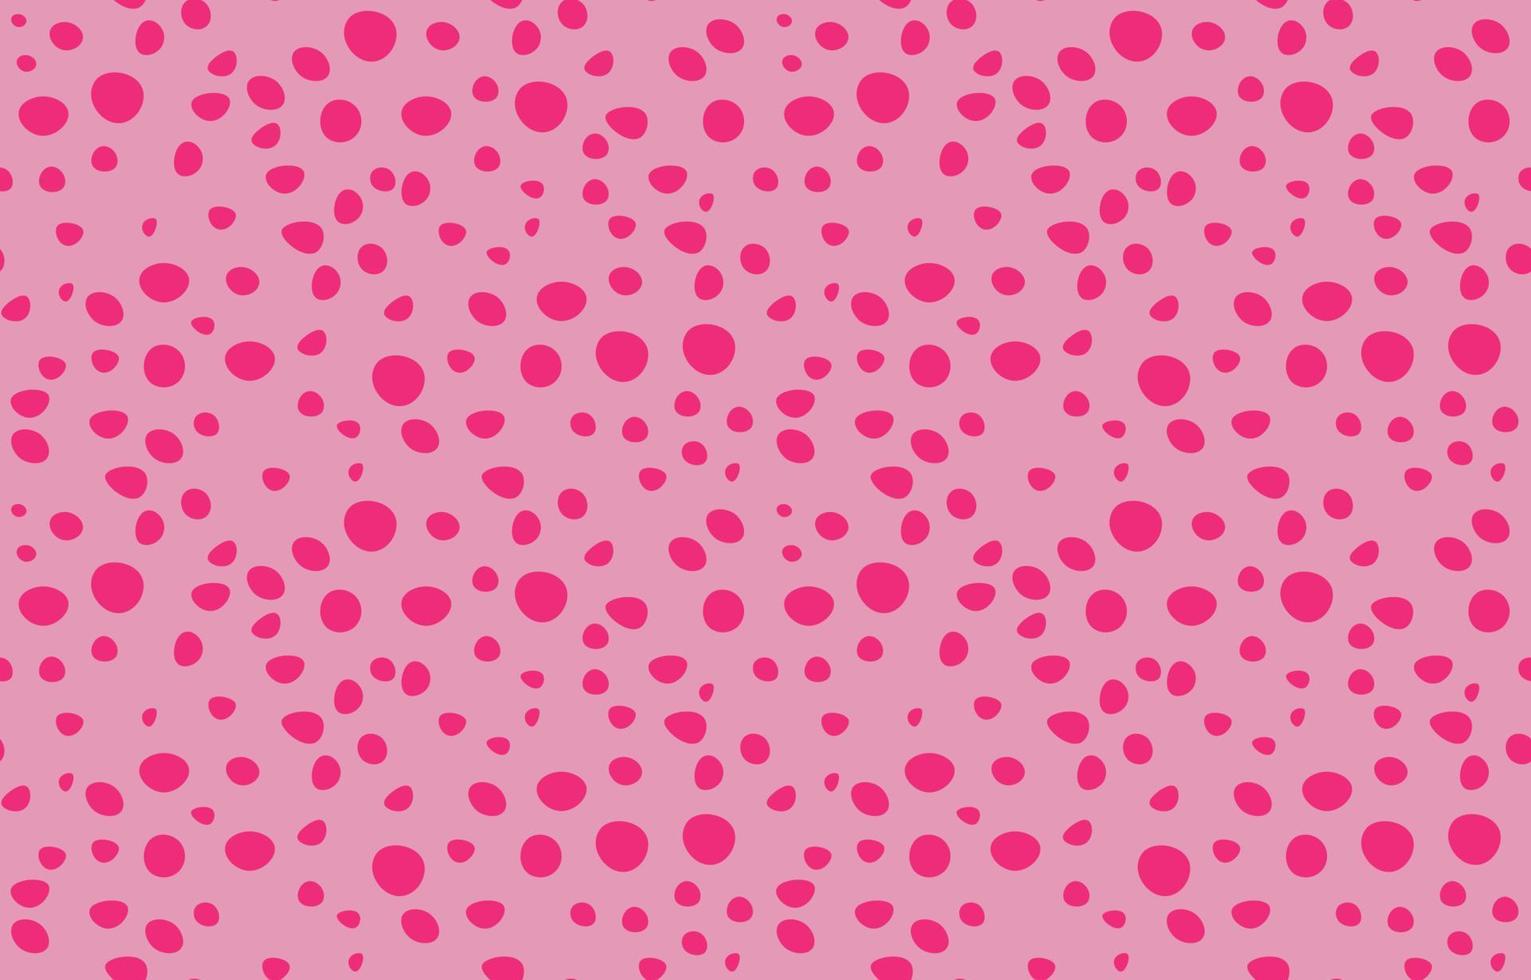 pink dots seamless pattern on pink background, cute wallpaper, bright minimalist style, modern polka dot fabric pattern